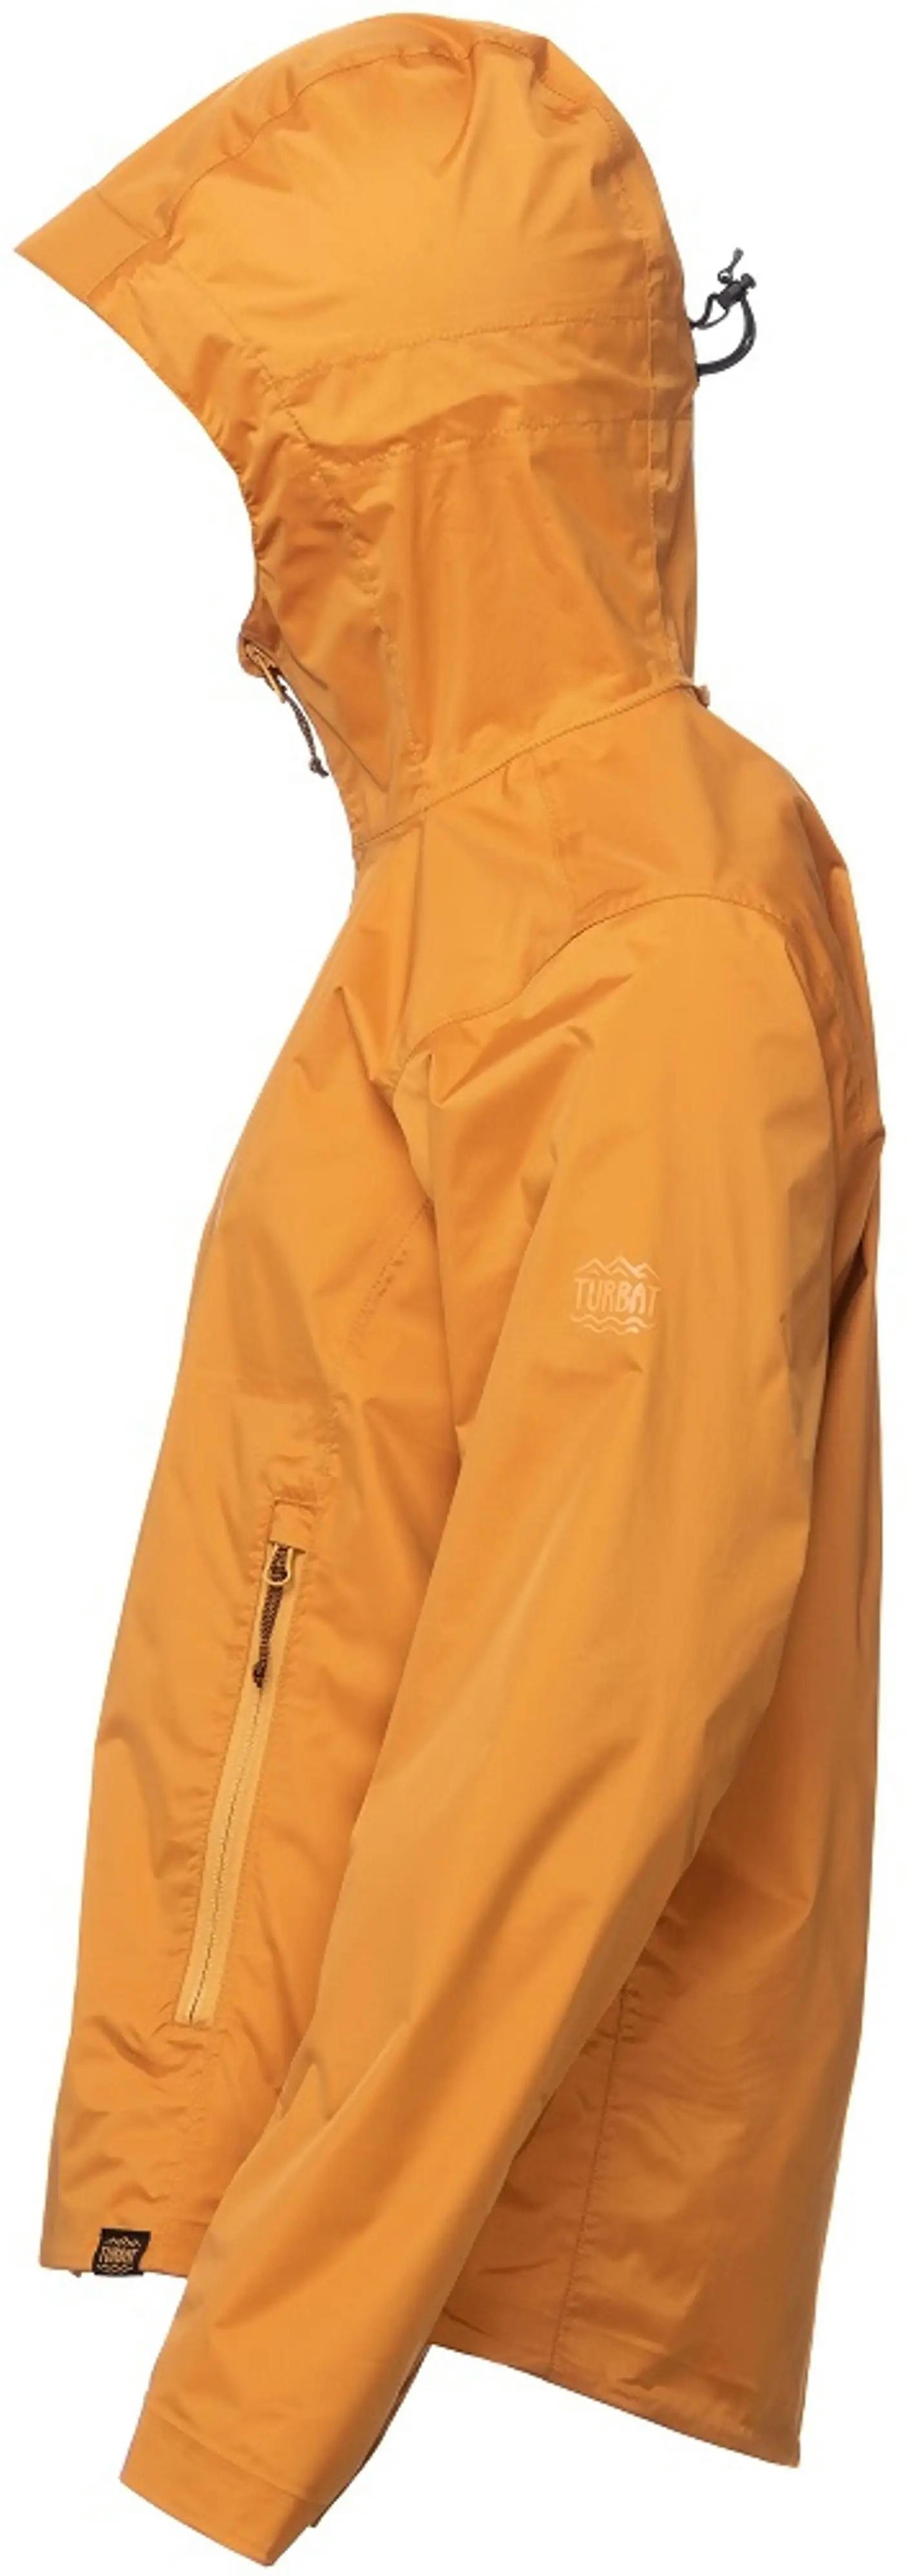 Куртка женская Turbat Isla Wmn golden oak orange XS оранжевый фото 3